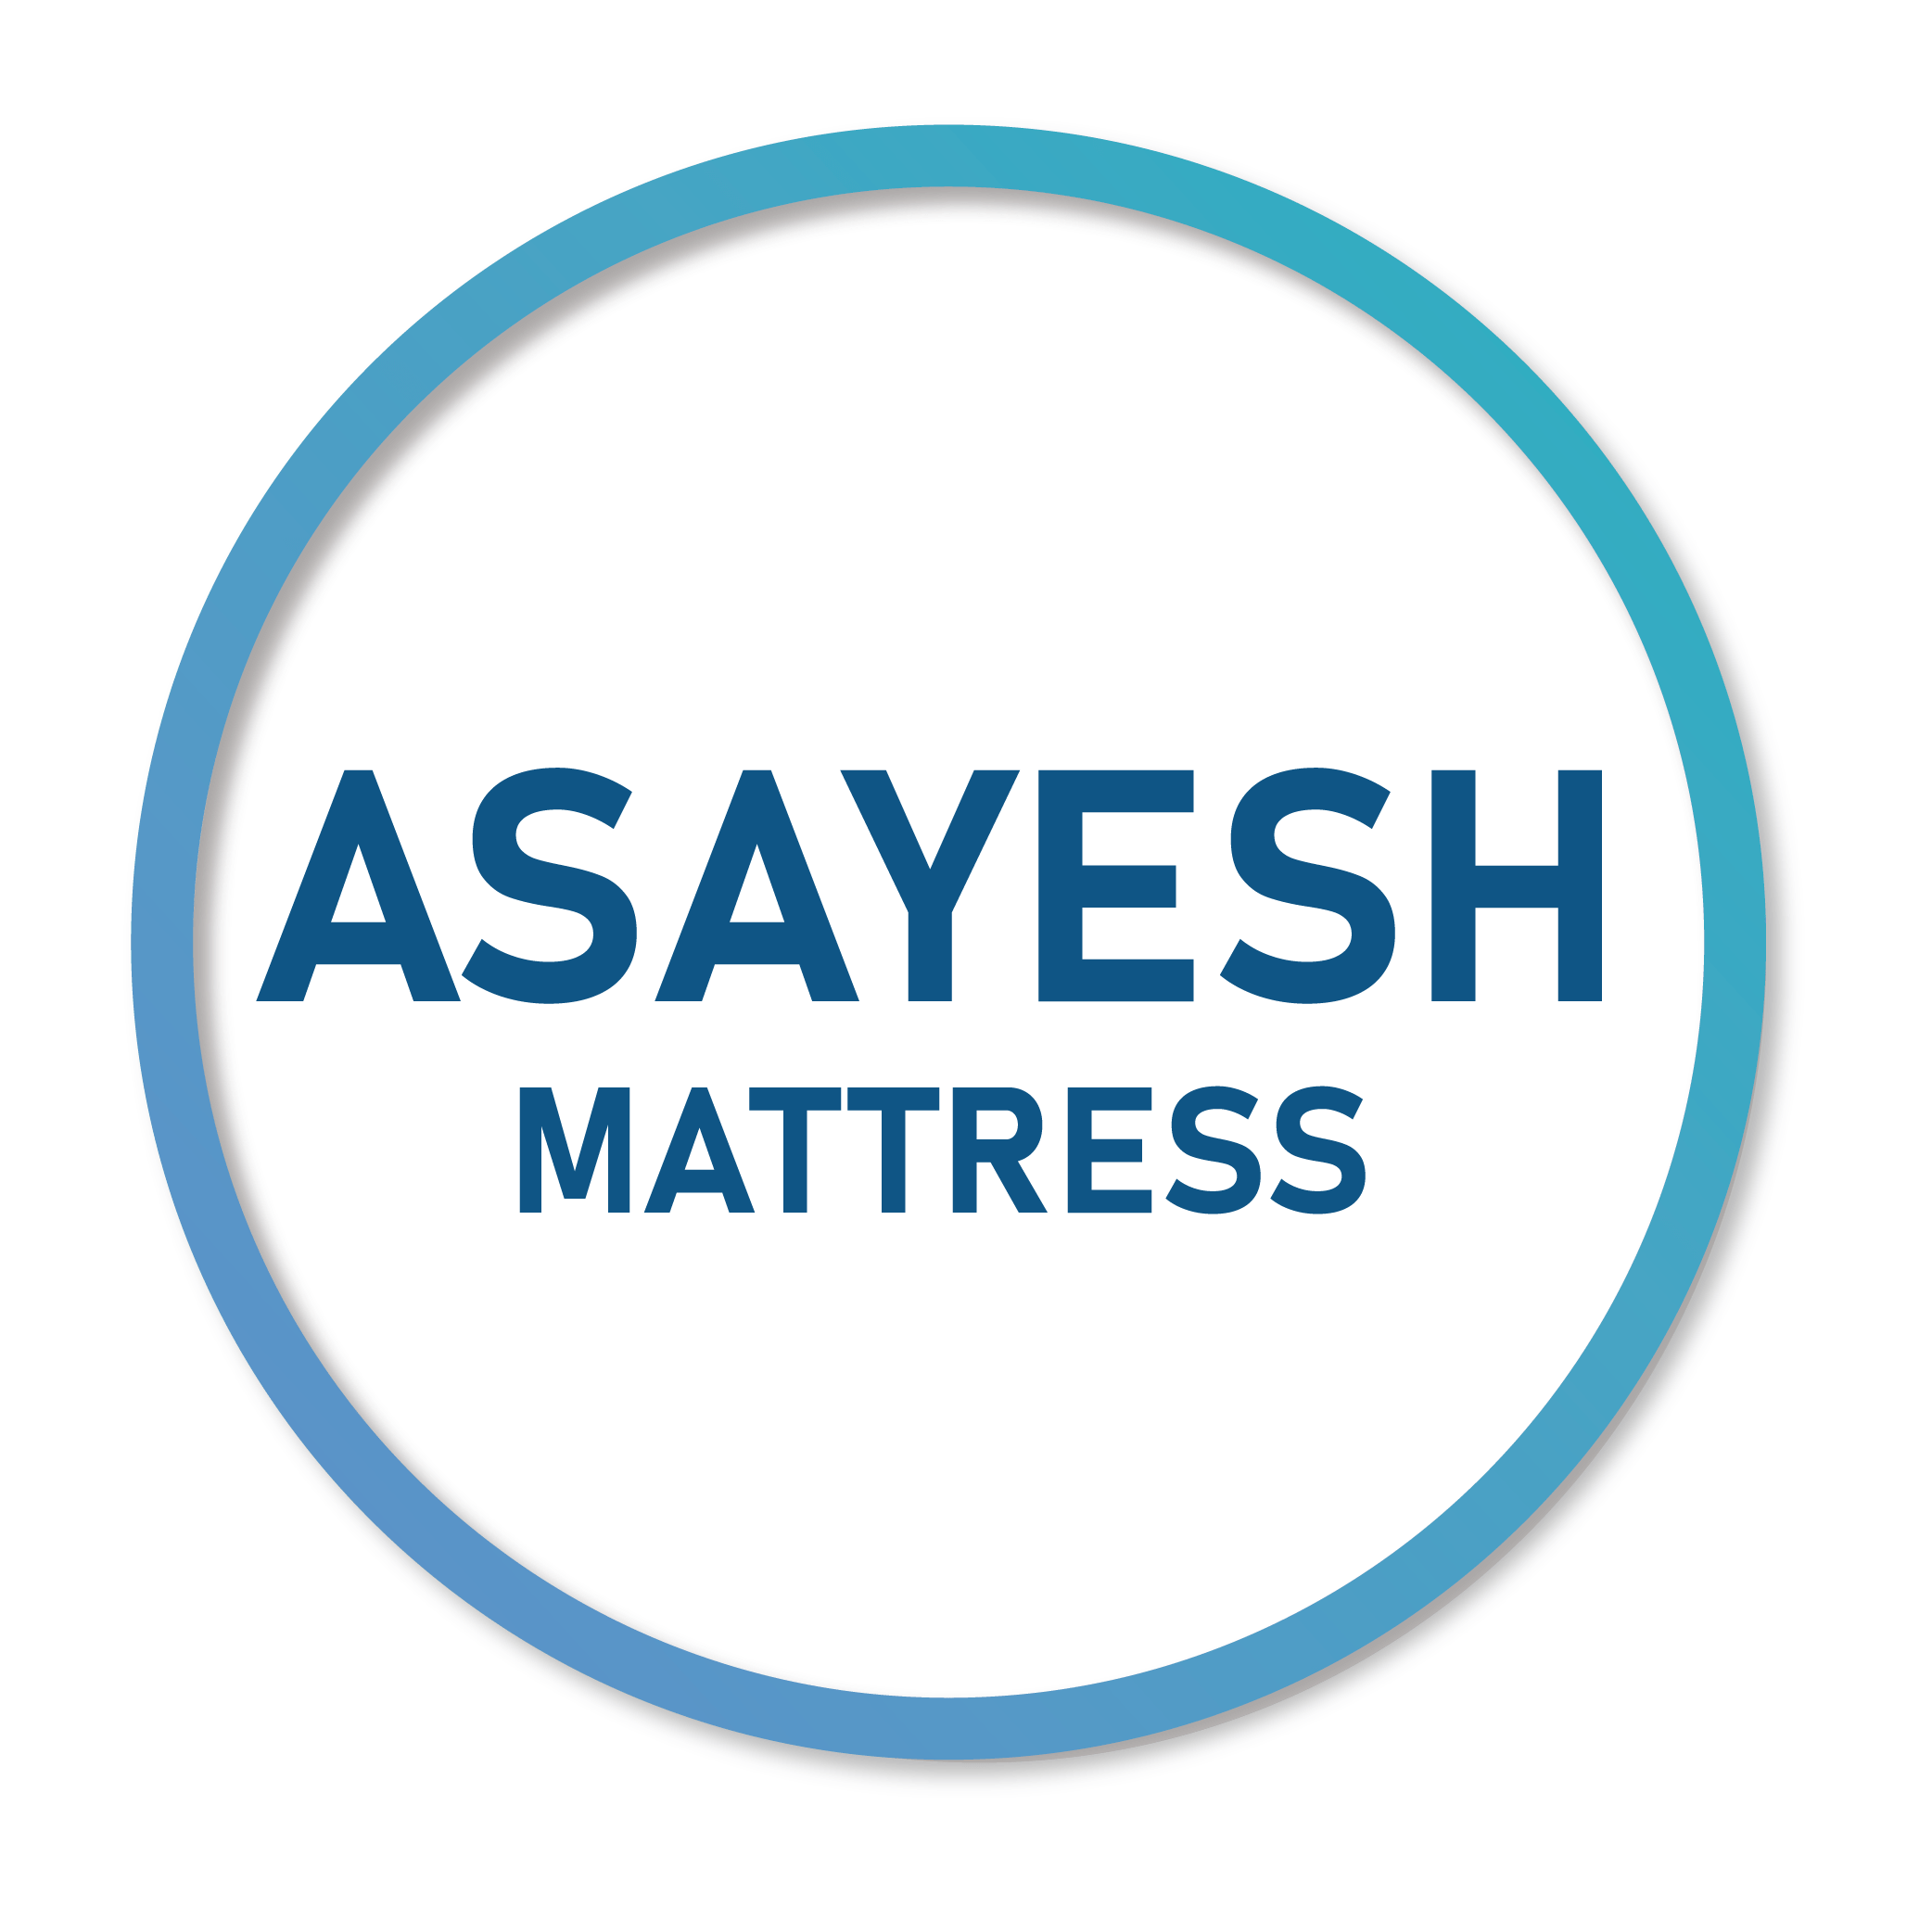 Asayesh mattress